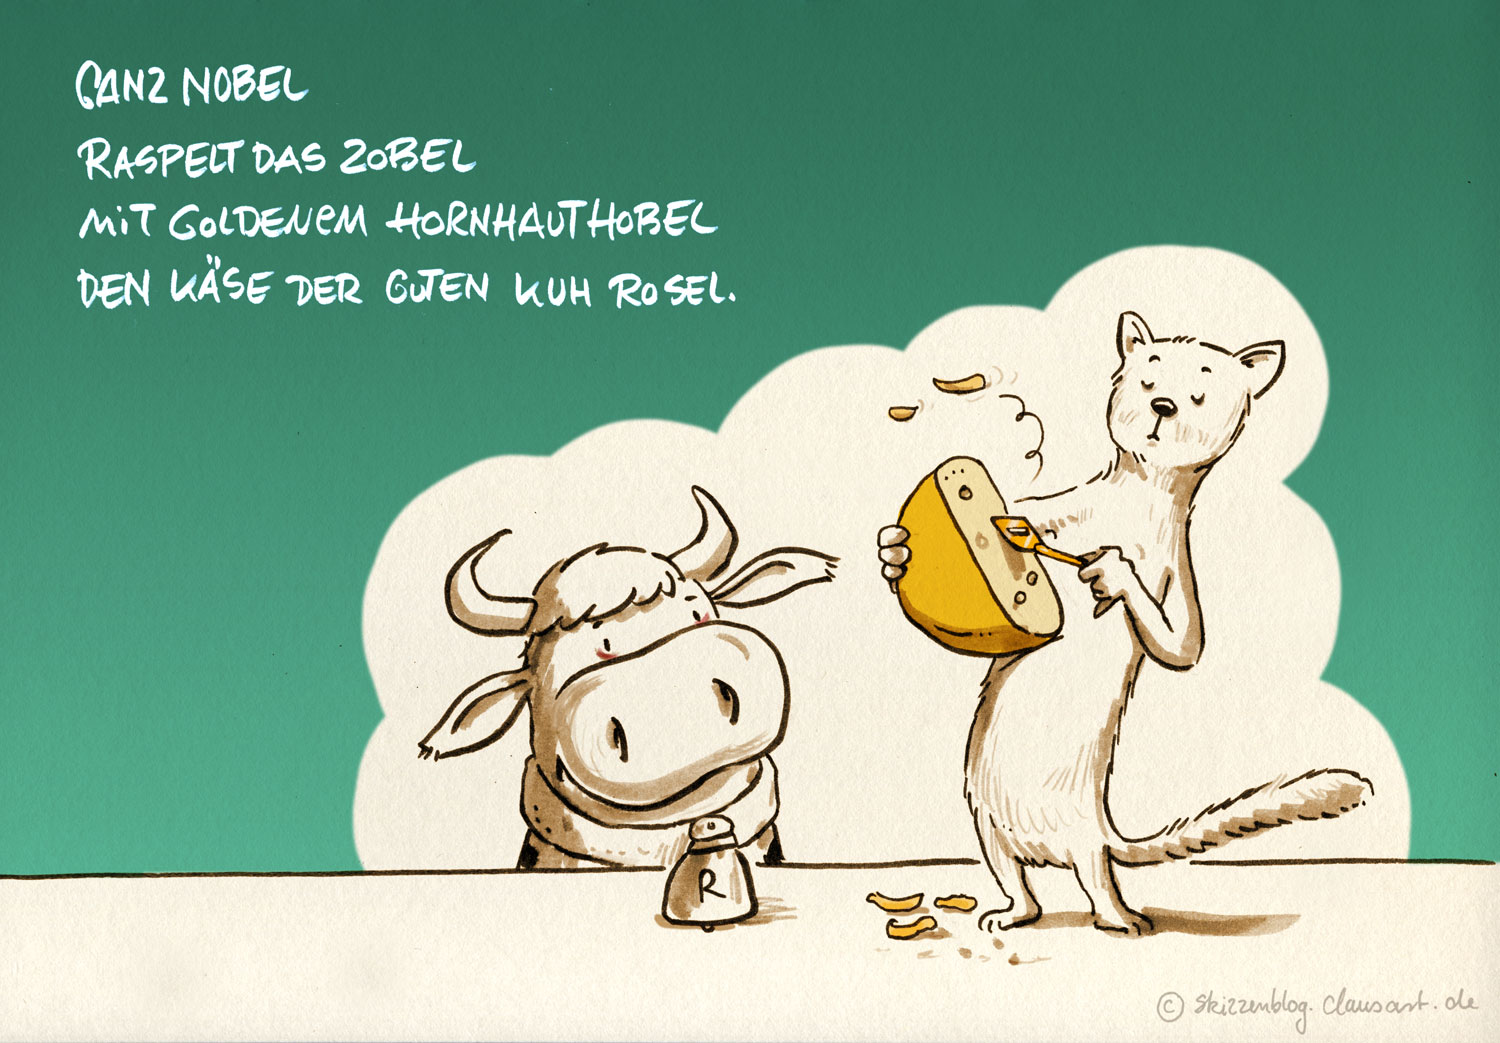 Ganz nobel raspelt das Zobel mit goldenem Hornhauthobel den Käse der guten Kuh Rosel.